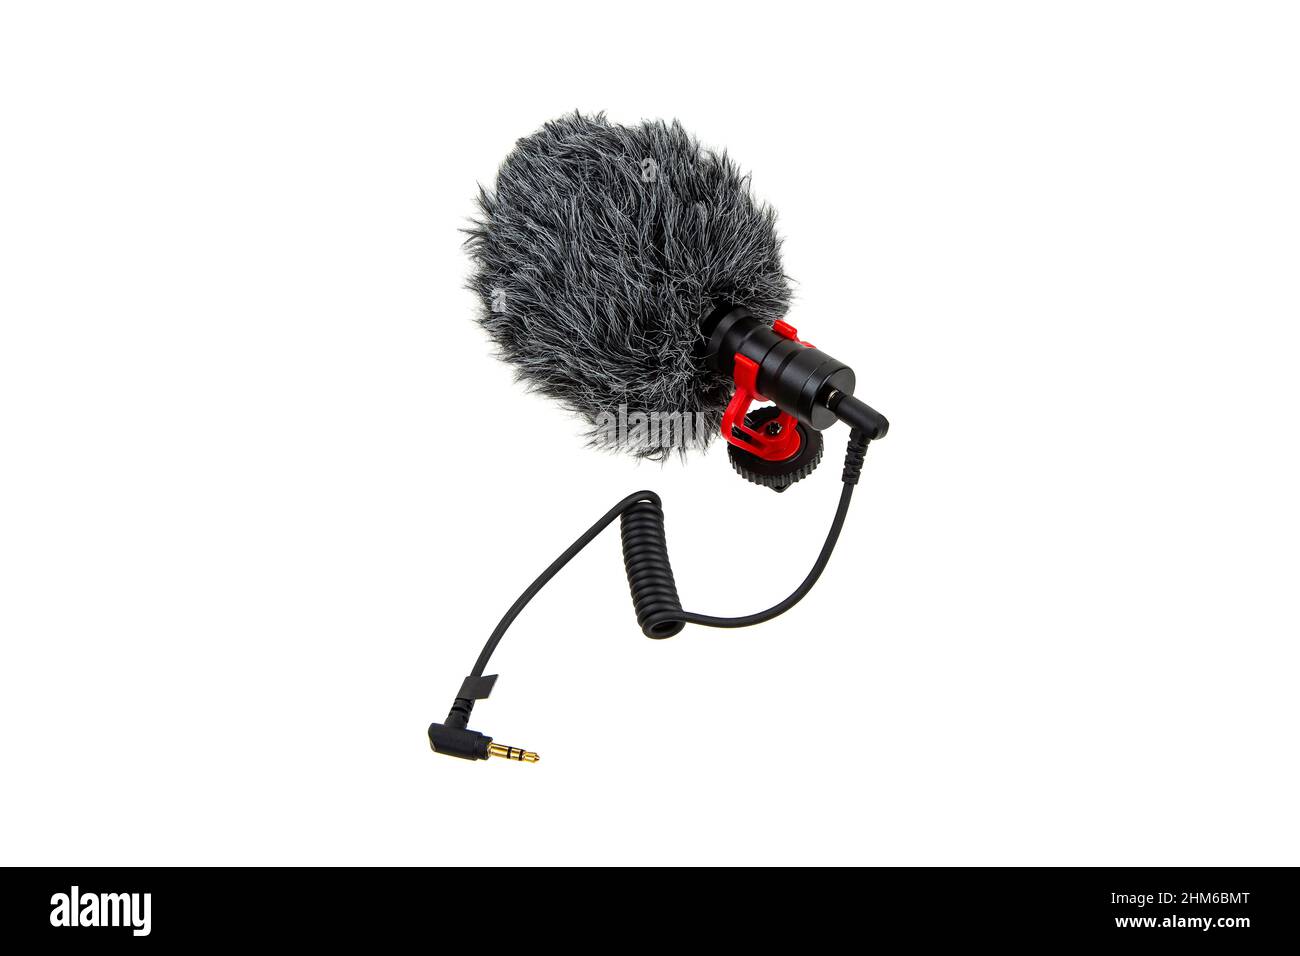 Kleines modernes On-Camera-Mikrofon mit Windschutz. Richtmikrofon.  Audio-Aufnahme-Tool. Isolieren auf weißem Hintergrund Stockfotografie -  Alamy